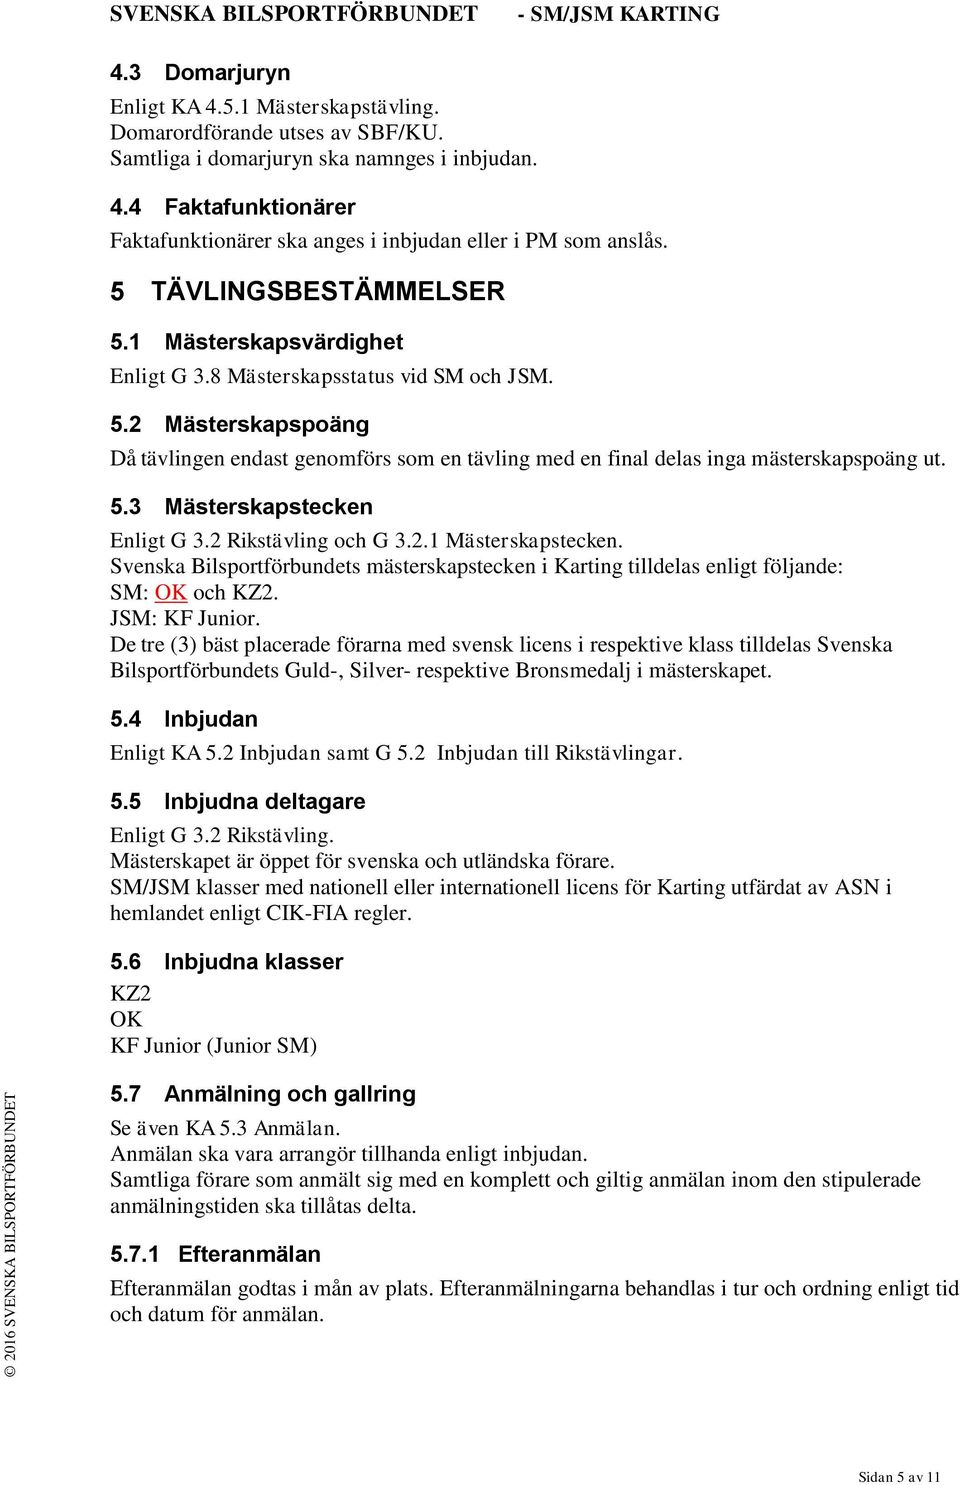 5.3 Mästerskapstecken Enligt G 3.2 Rikstävling och G 3.2.1 Mästerskapstecken. Svenska Bilsportförbundets mästerskapstecken i Karting tilldelas enligt följande: SM: OK och KZ2. JSM: KF Junior.